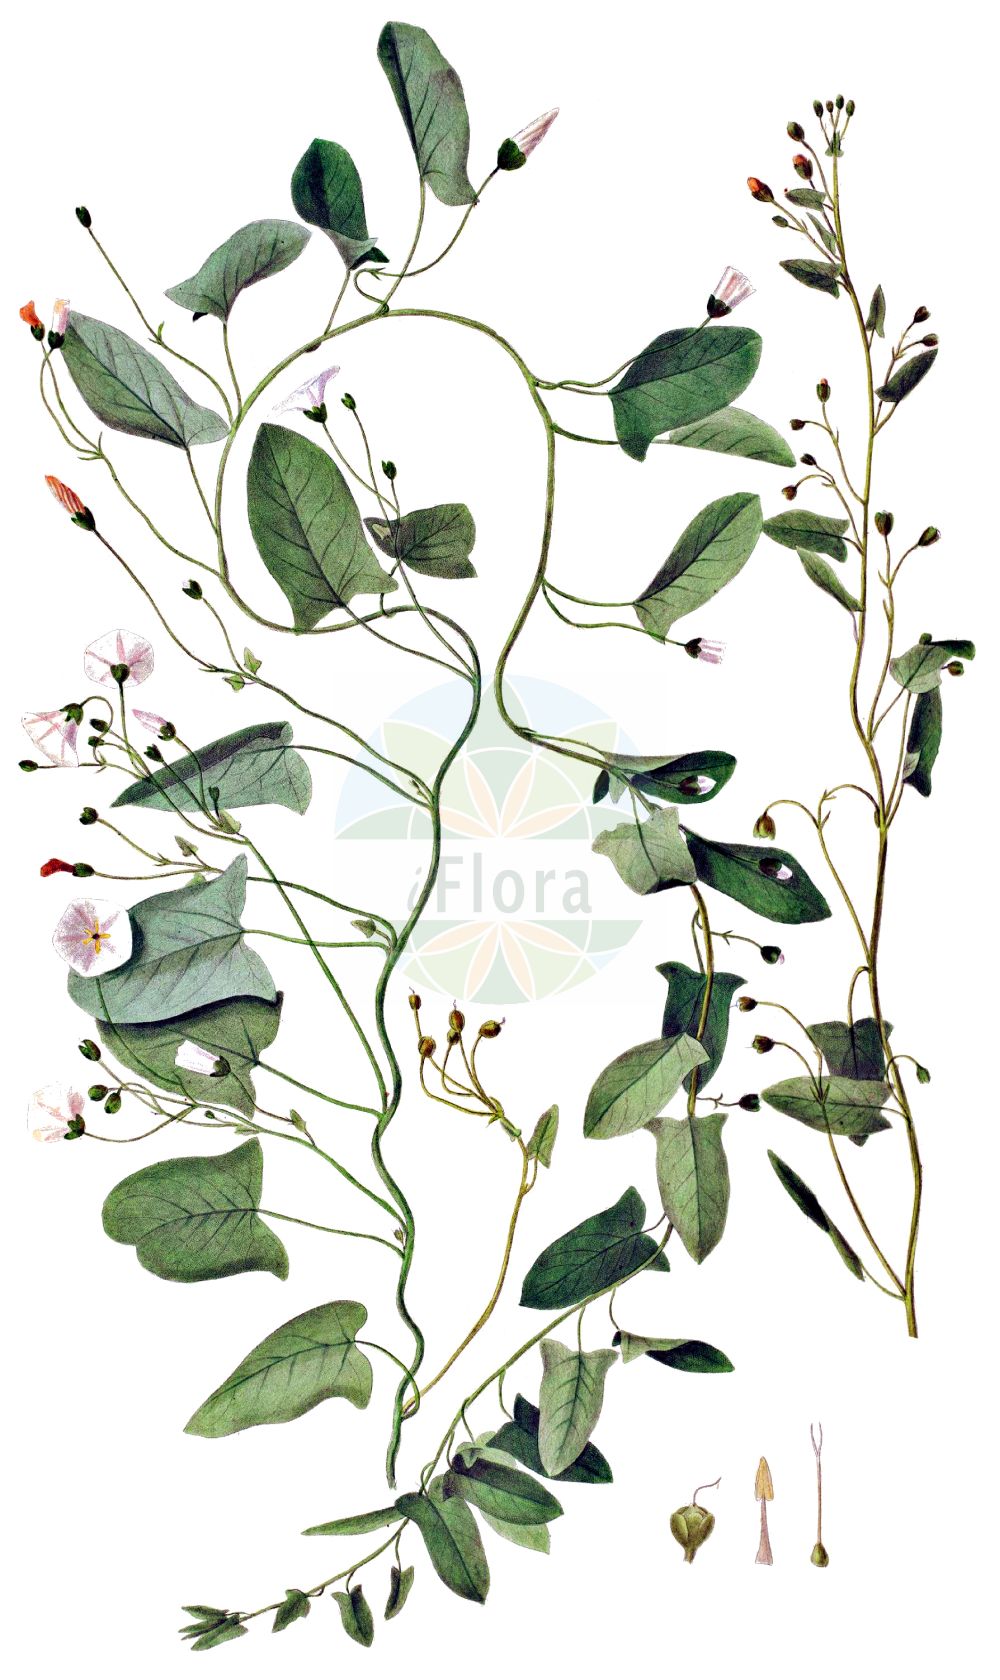 Historische Abbildung von Convolvulus arvensis (Acker-Winde - Field Bindweed). Das Bild zeigt Blatt, Bluete, Frucht und Same. ---- Historical Drawing of Convolvulus arvensis (Acker-Winde - Field Bindweed). The image is showing leaf, flower, fruit and seed.(Convolvulus arvensis,Acker-Winde,Field Bindweed,Convolvulus arvensis,Convolvulus auriculatus,Convolvulus cherleri,Convolvulus corsicus,Acker-Winde,Field Bindweed,Gray Bindweed,Cornbine,Field Morning Glory,Possession Vine,Small Bindweed,Convolvulus,Winde,Bindweed,Convolvulaceae,Windengewächse,Bindweed family,Blatt,Bluete,Frucht,Same,leaf,flower,fruit,seed,Oeder (1761-1883))